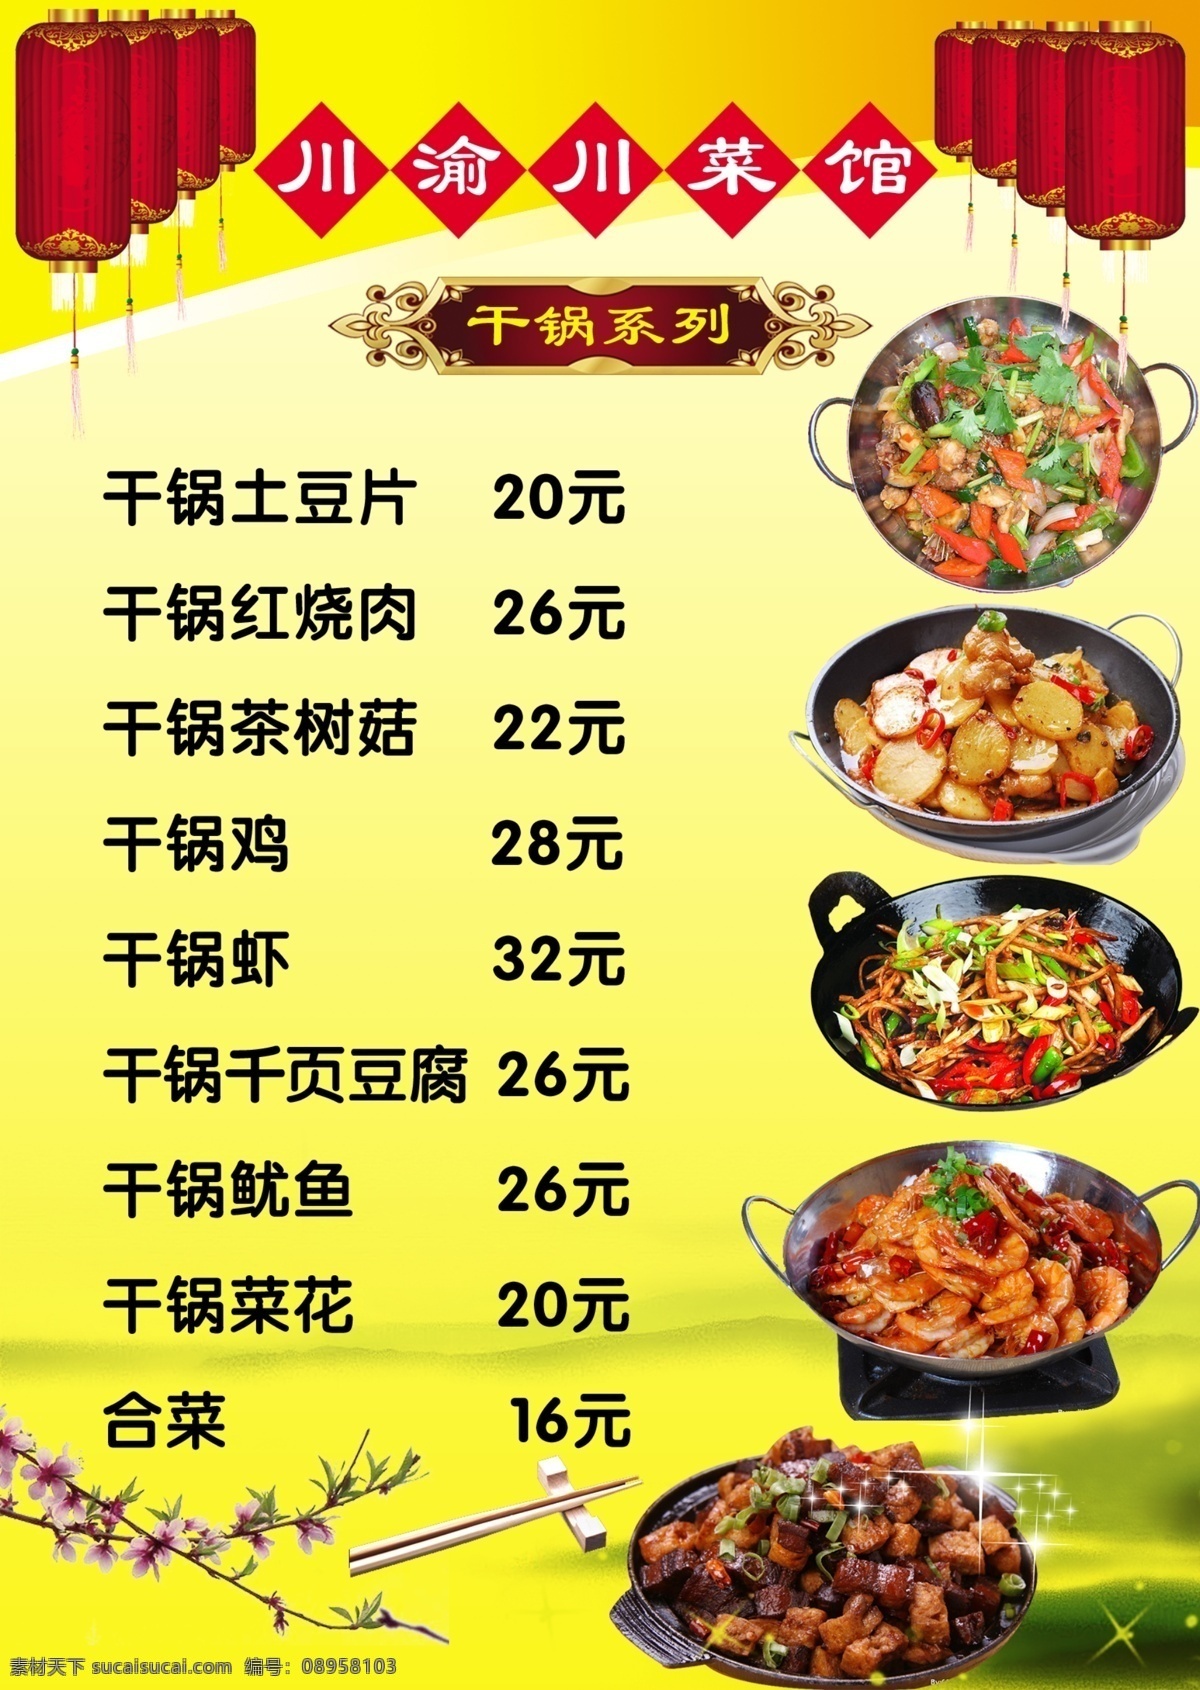 干锅类菜单 菜单 干锅 土豆 虾 排骨 分层